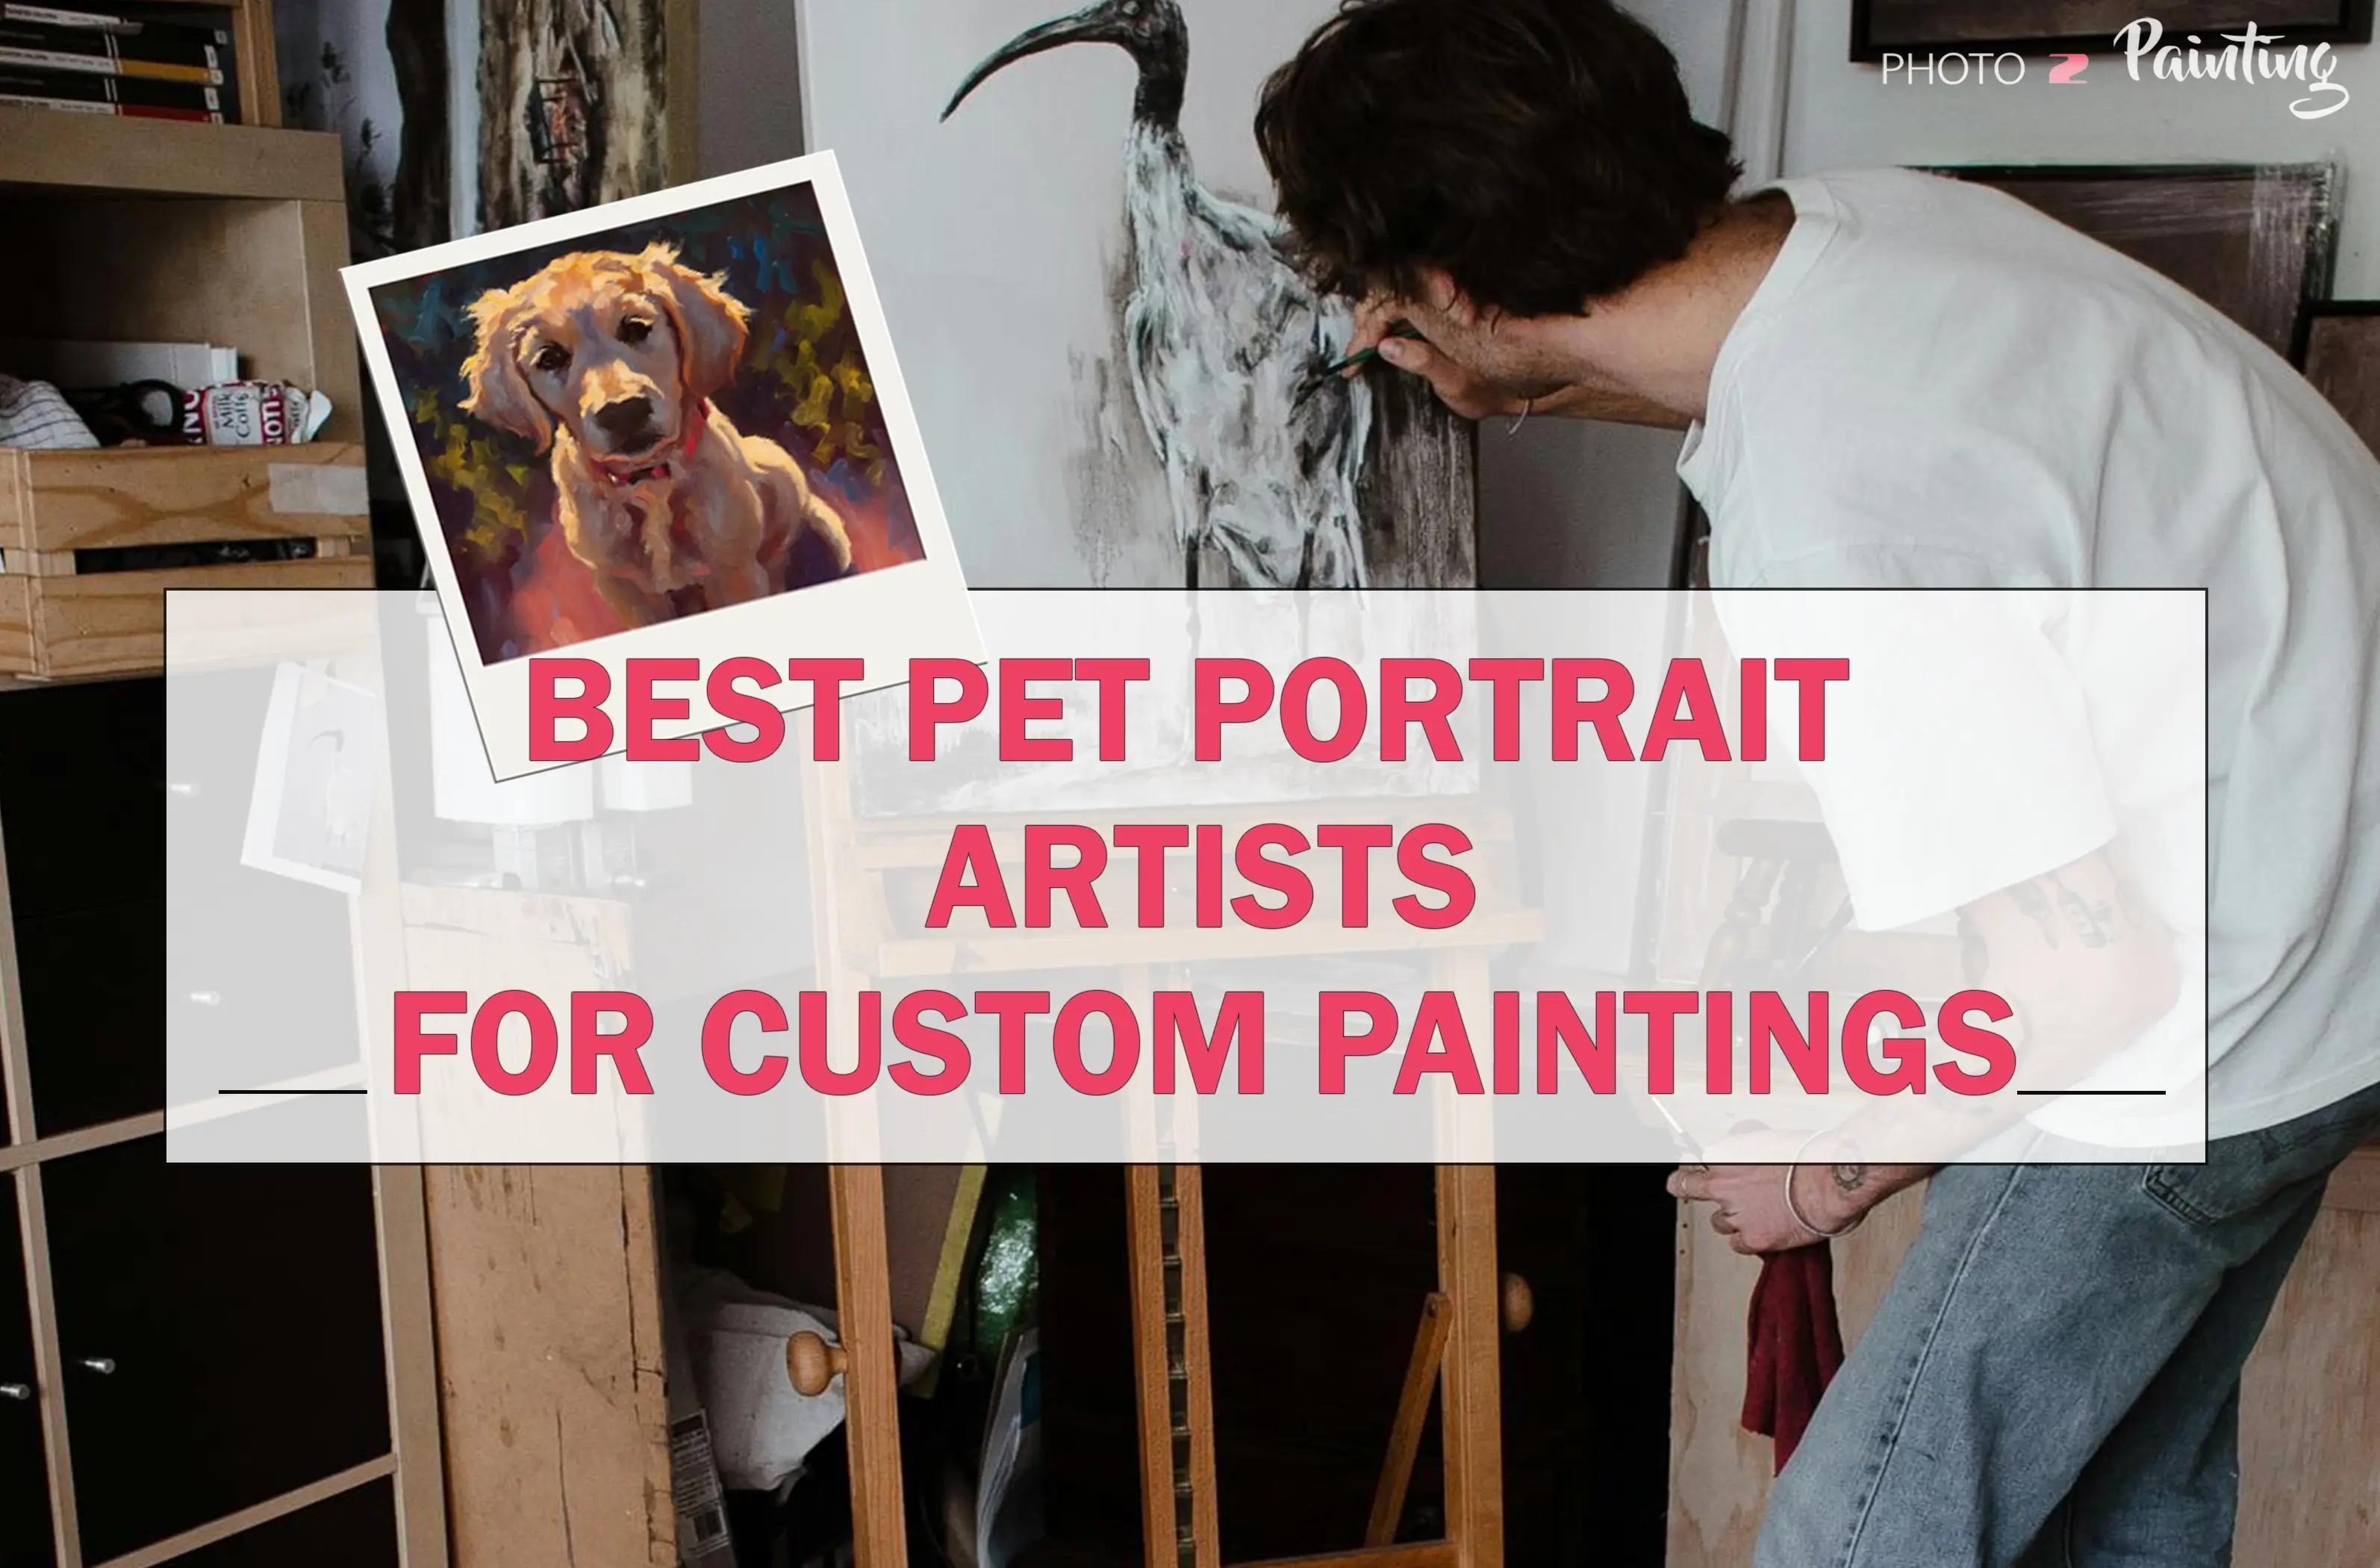 Best Pet Portrait Artists for Custom Painting